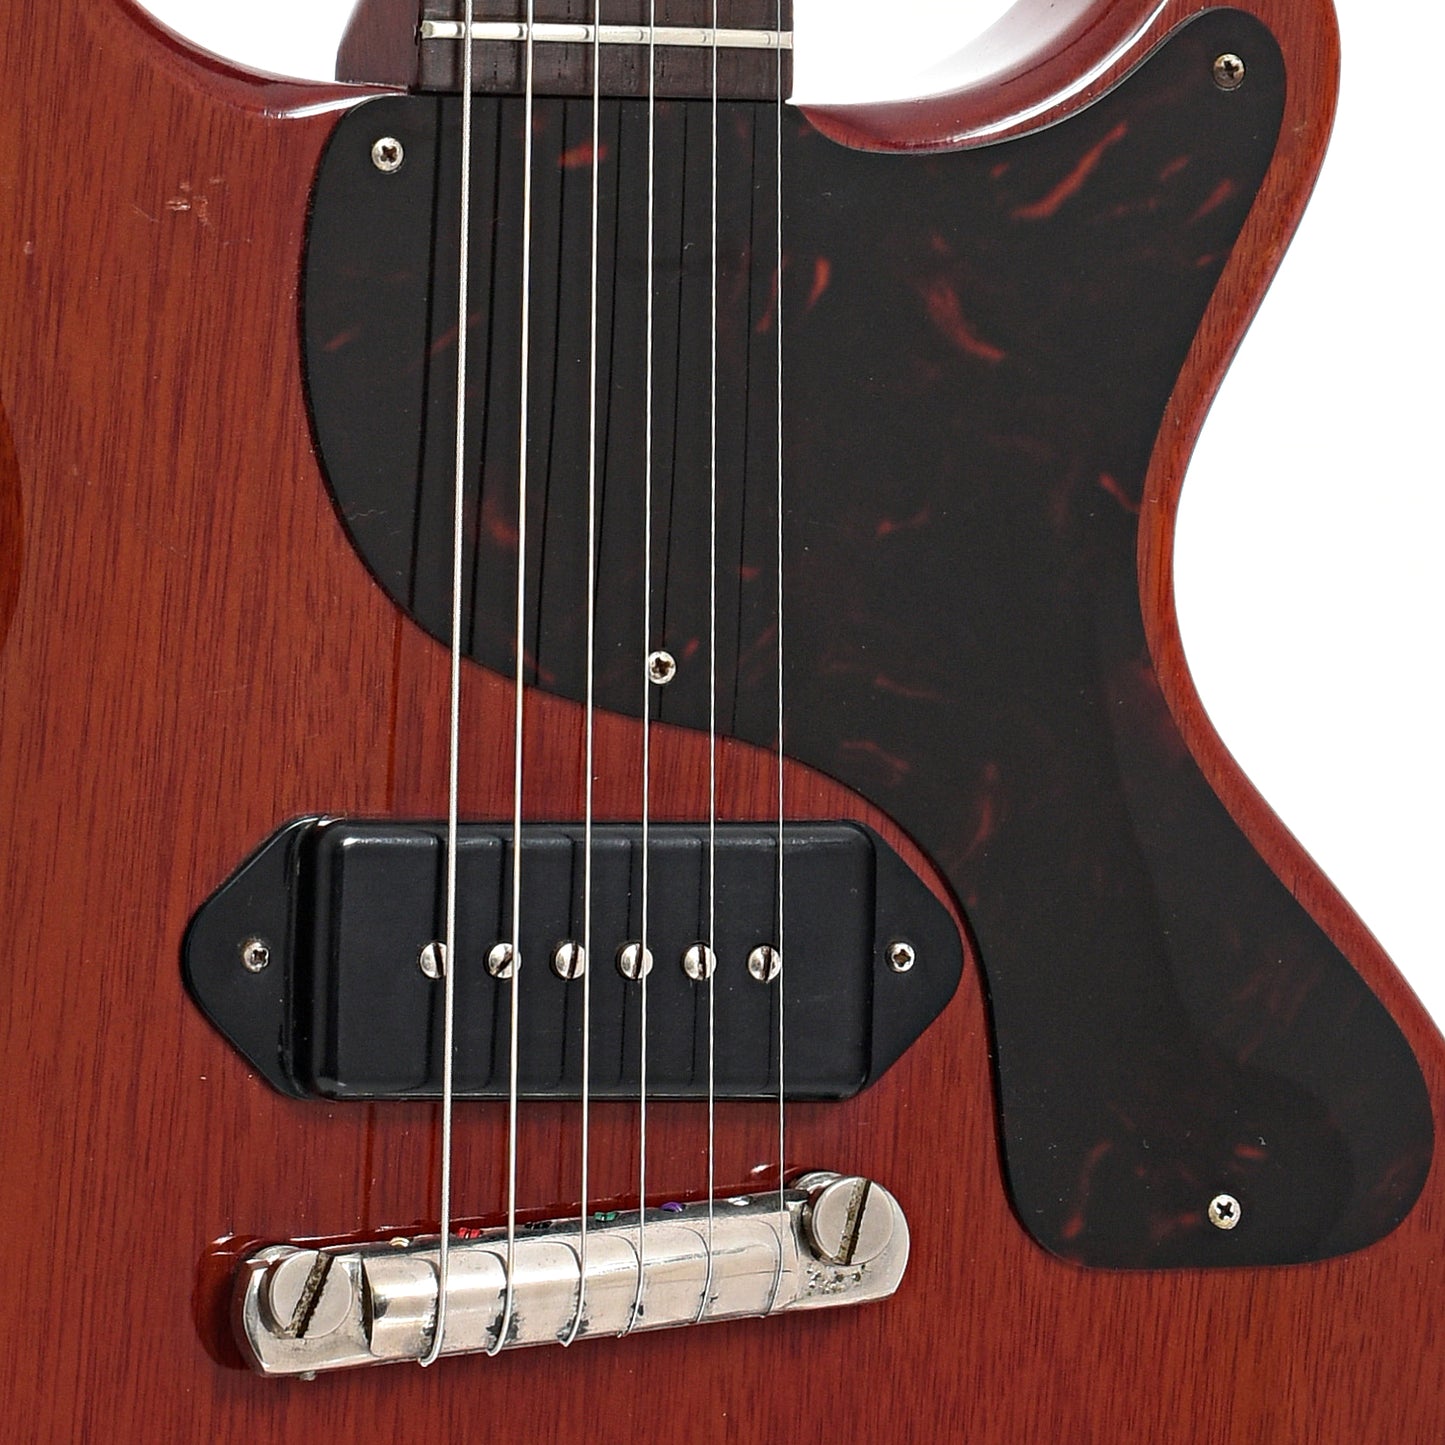 Bridge and pickup of Gibson Les Paul Jr Electric Guitar (1960)